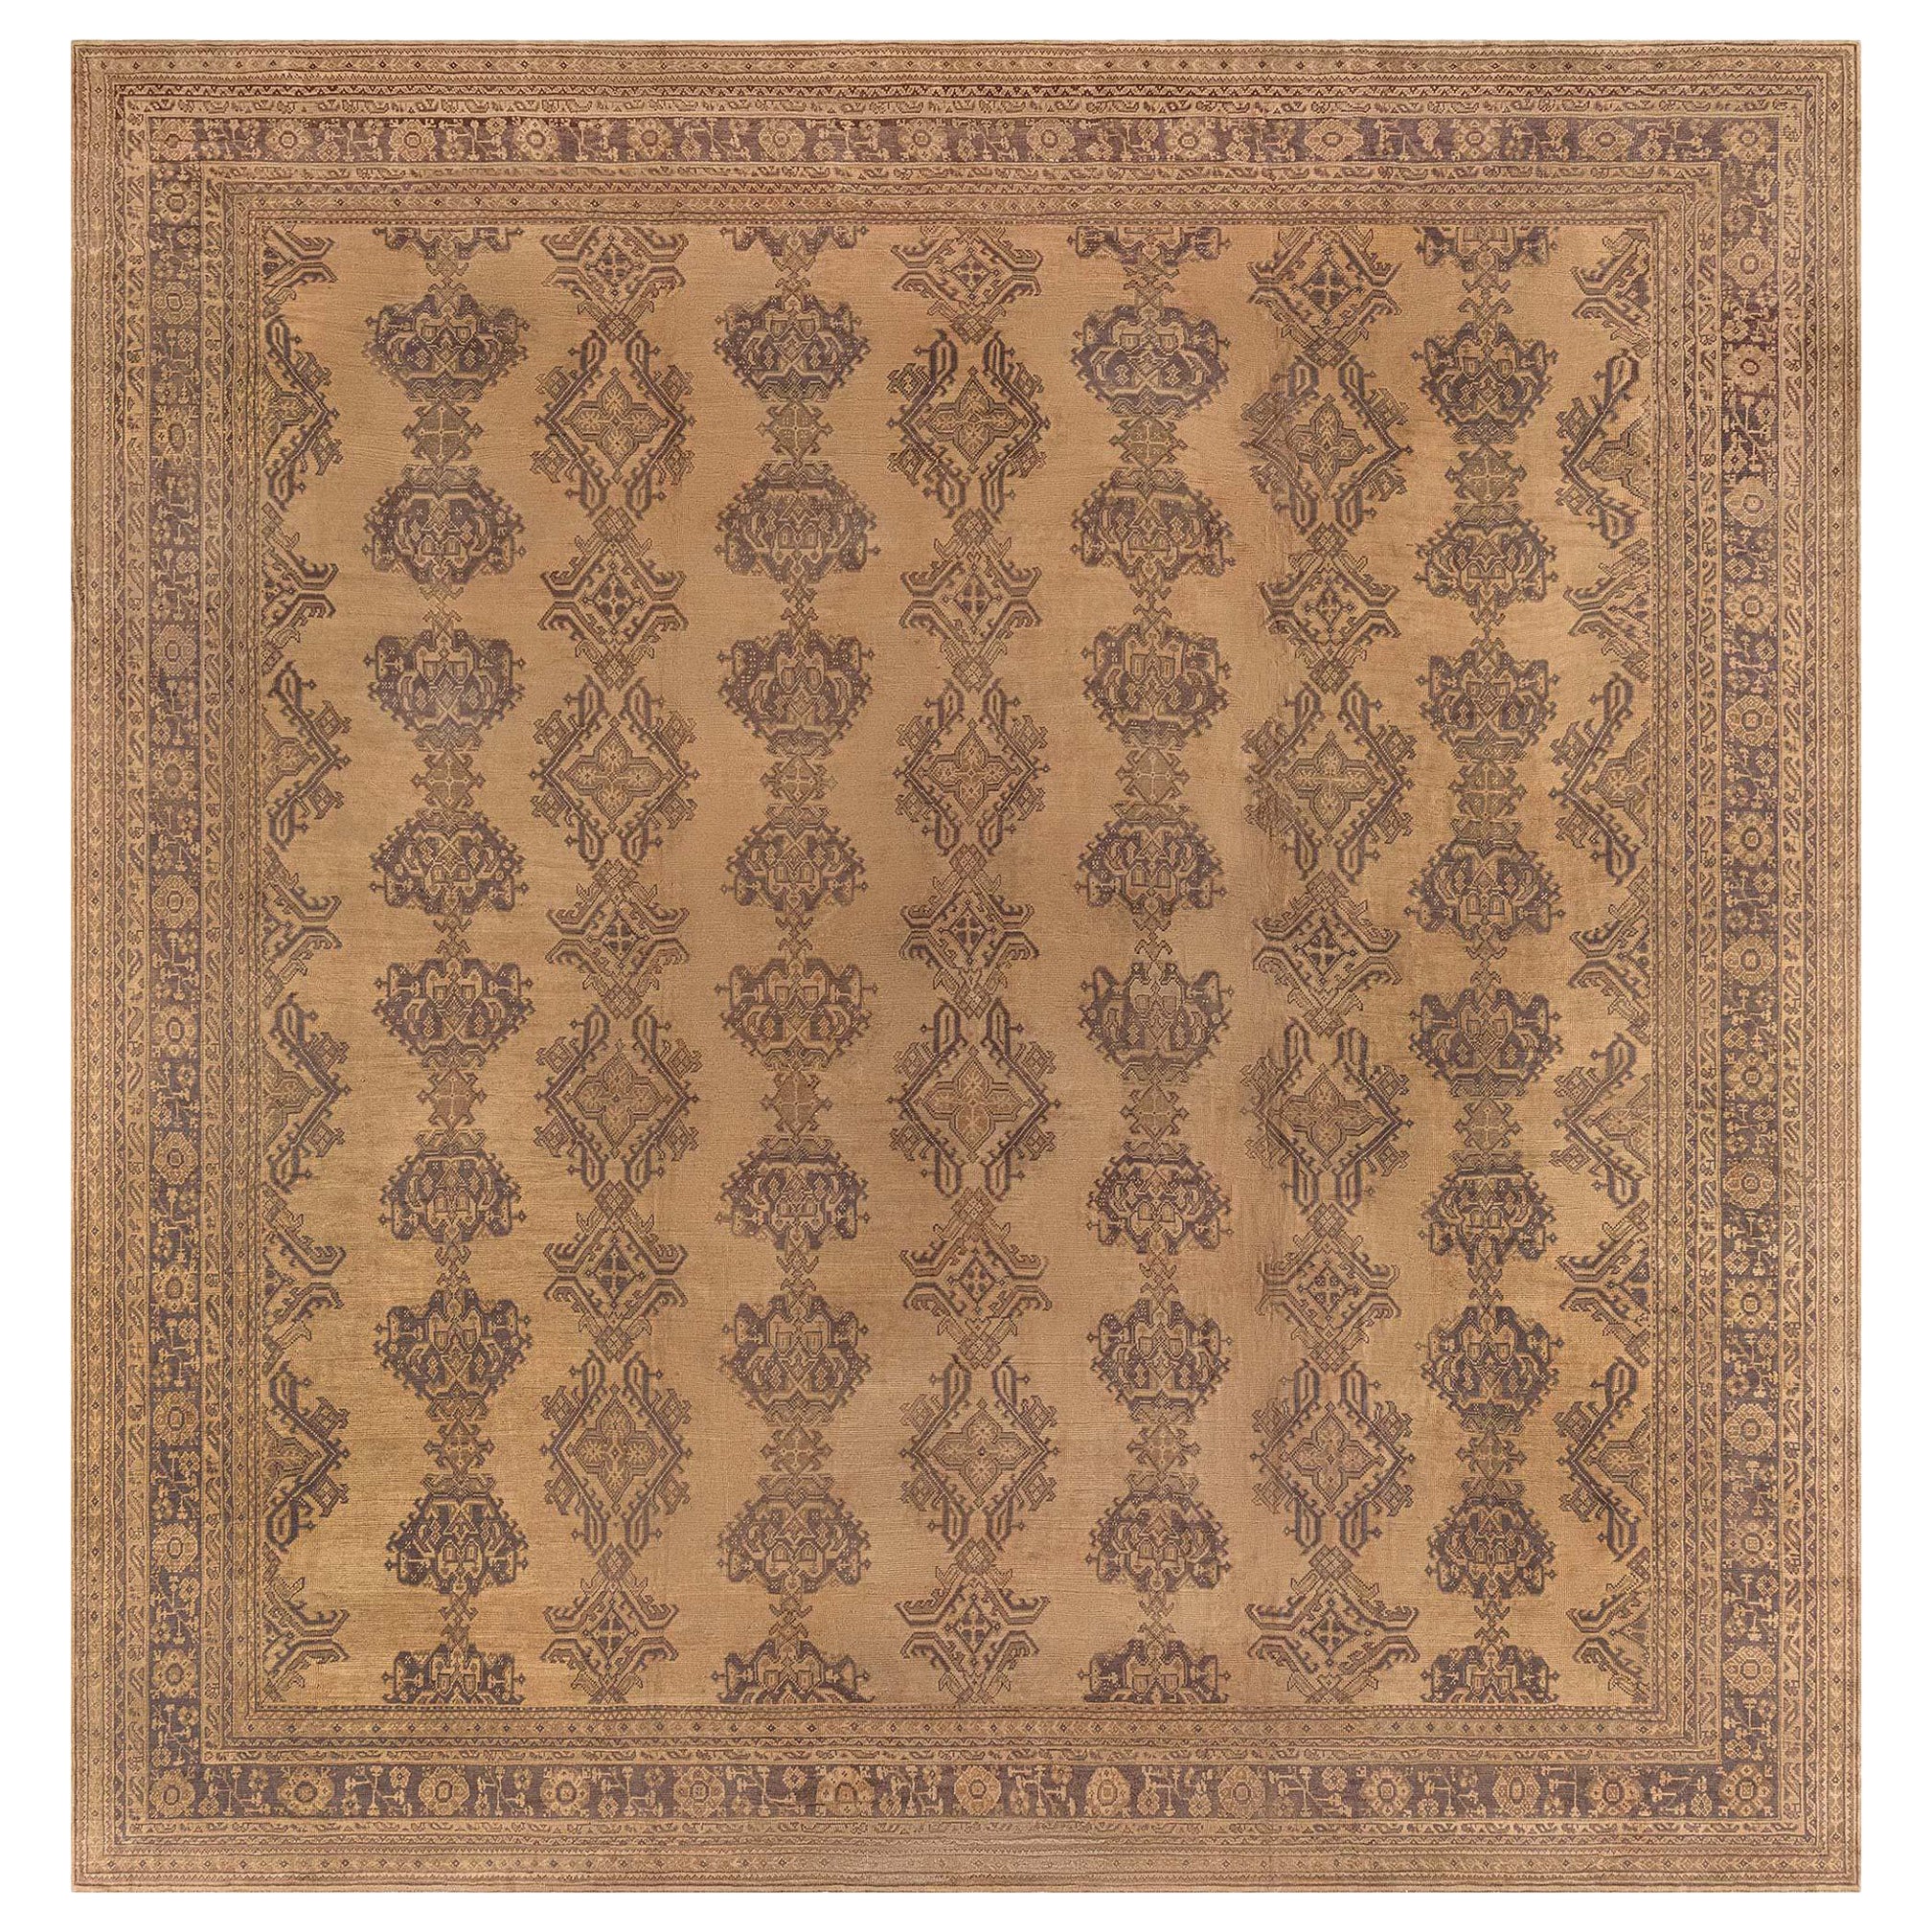 Authentischer türkischer Oushak-Teppich in Übergröße aus dem Jahr 1900